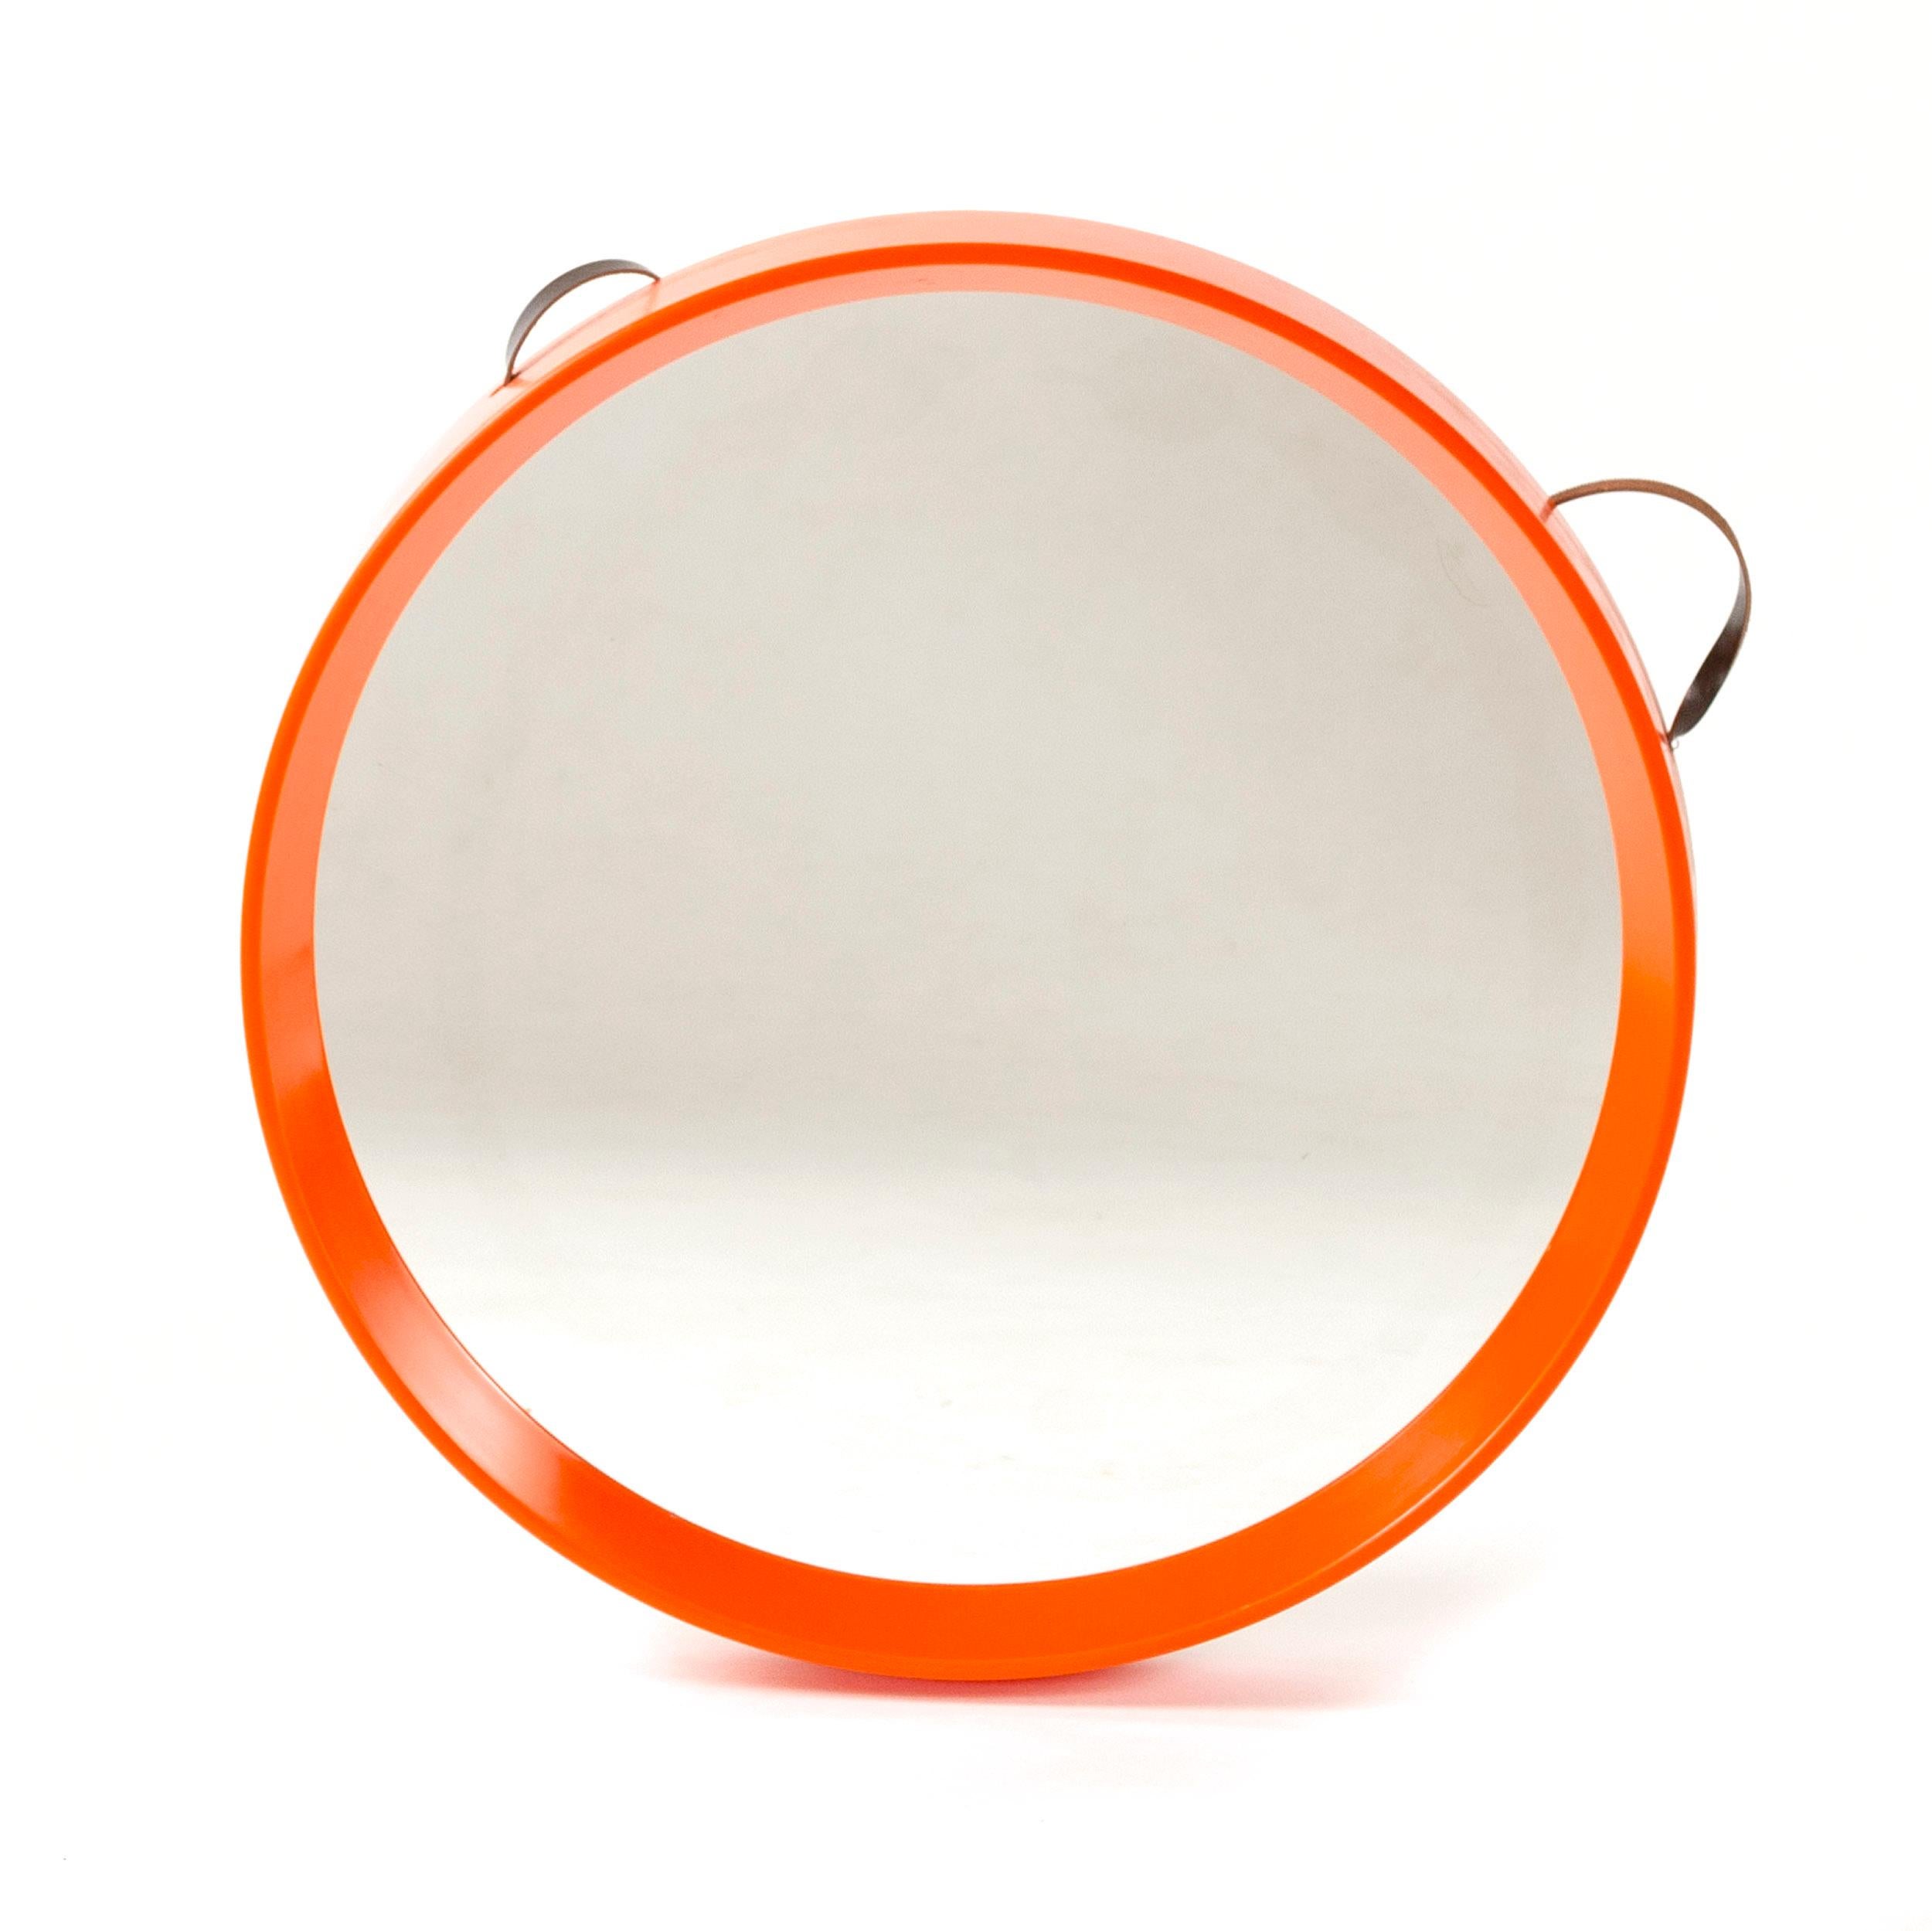 Ein orangefarbener, runder Spiegel mit spitzem Rand, der an einem dünnen Lederband hängt.